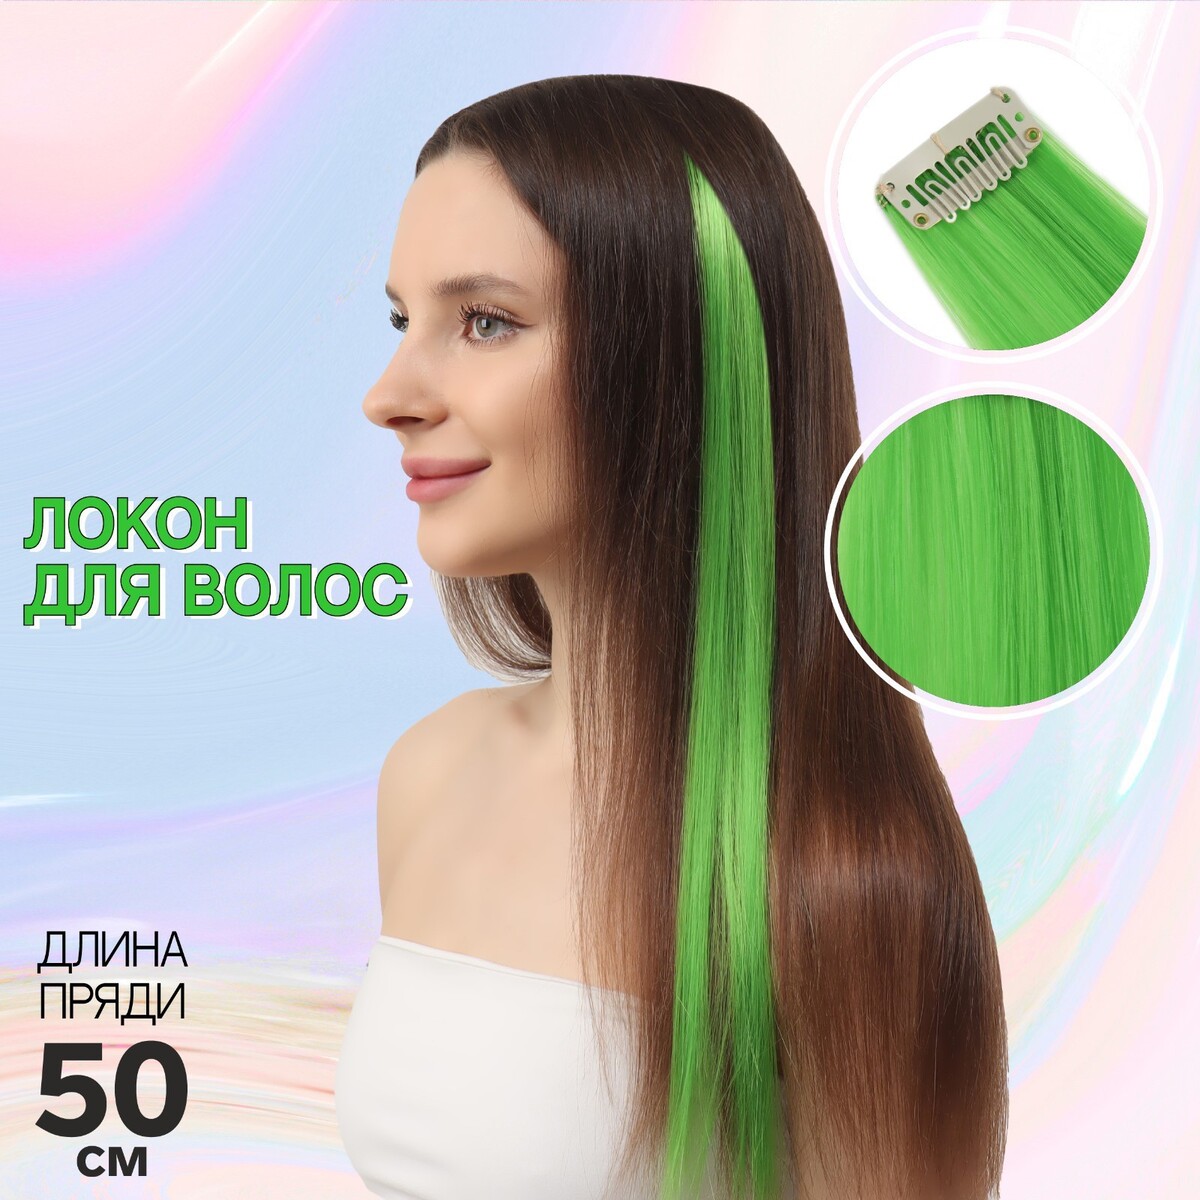 Локон накладной, прямой волос, на заколке, 50 см, 5 гр, цвет зеленый локон накладной прямой волос на заколке 50 см 5 гр тёмно русый